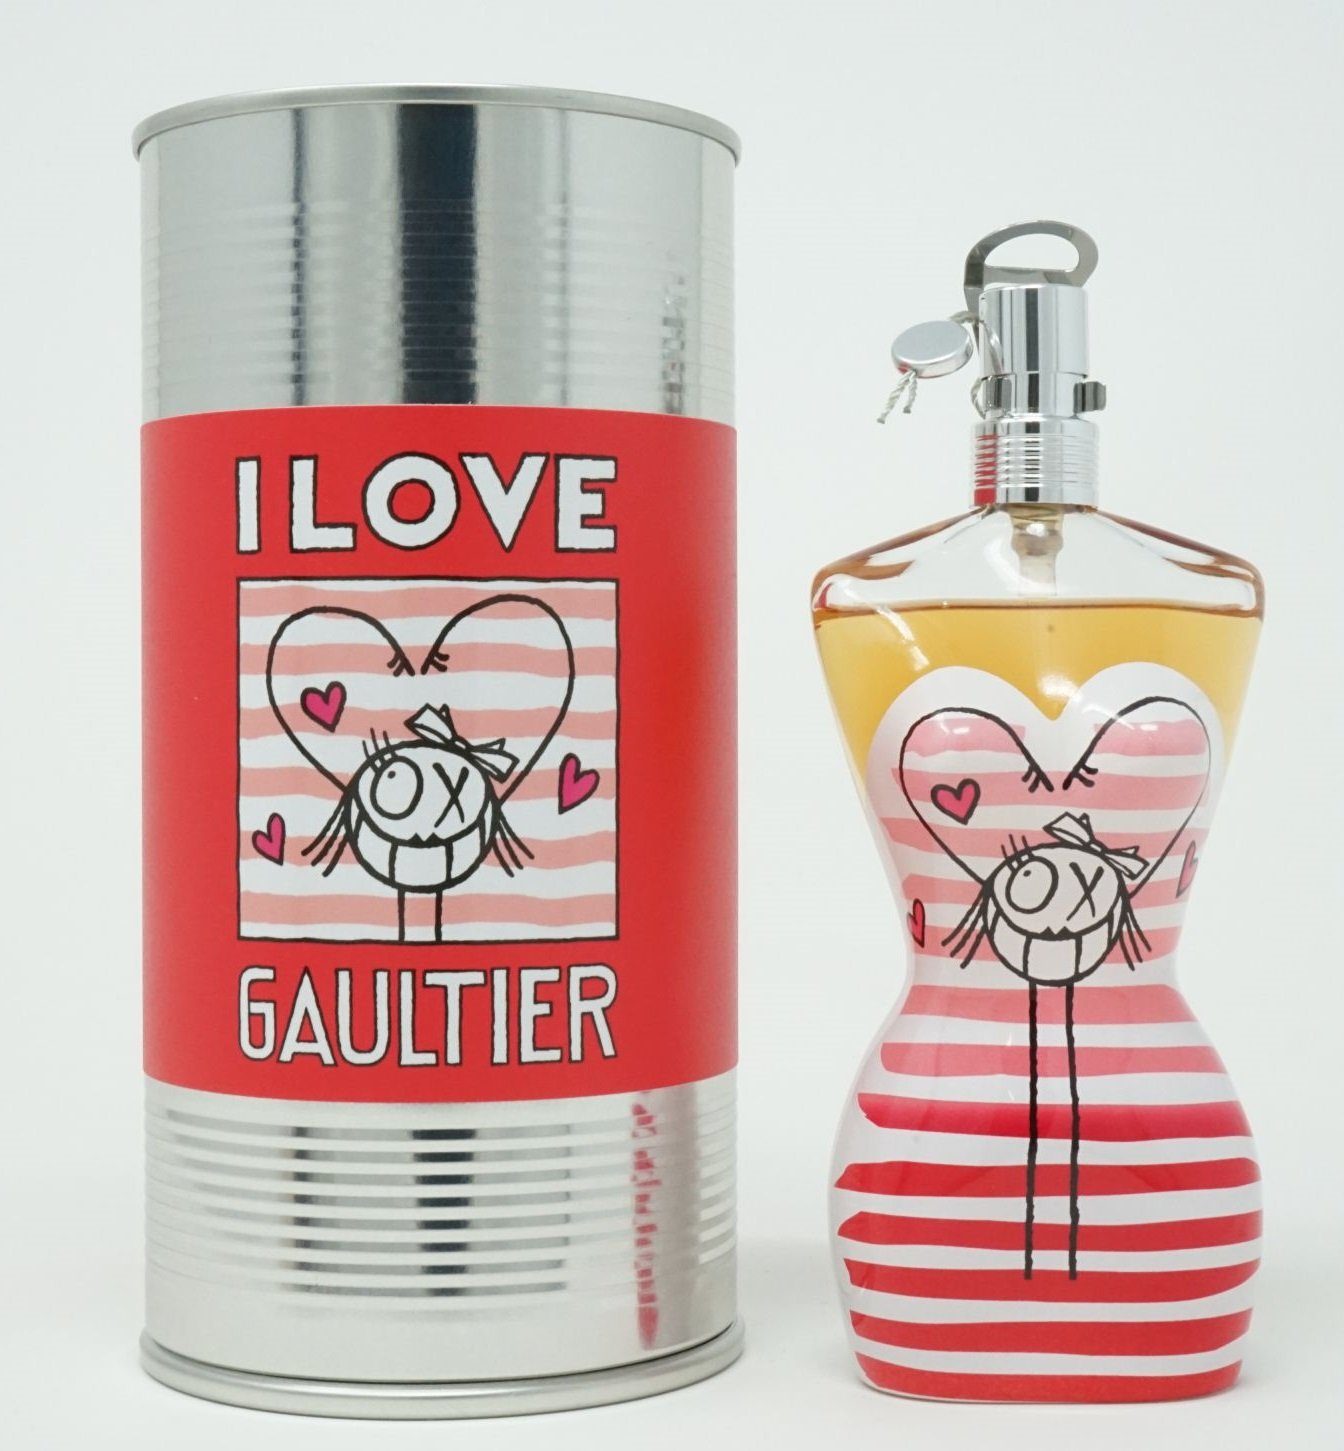 JEAN PAUL GAULTIER Eau de Toilette Jean Paul Gaultier I Love Gaultier Eau Fraiche Eau De Toilette 100ml